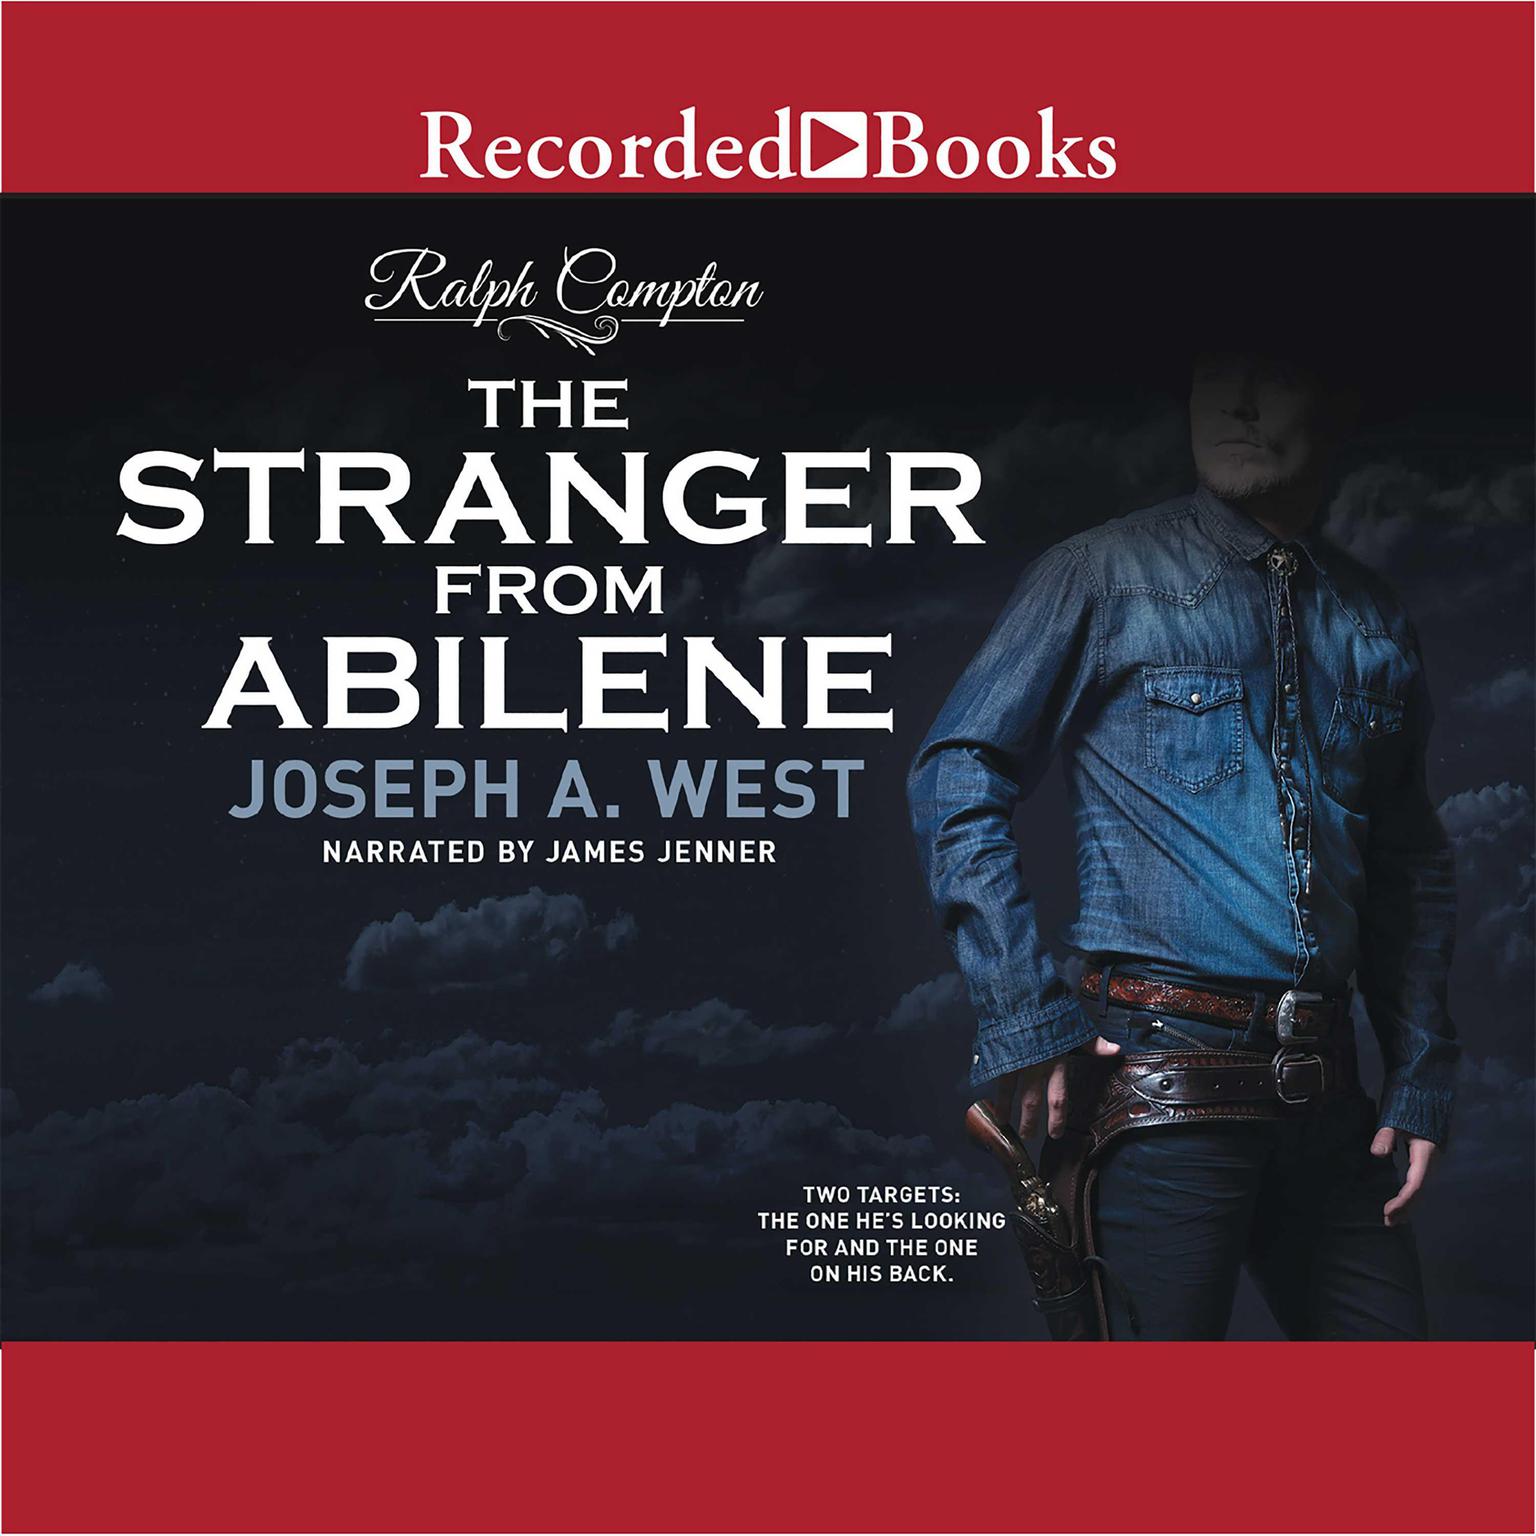 Ralph Compton The Stranger From Abilene: The Stranger From Abilene Audiobook, by Joseph A. West